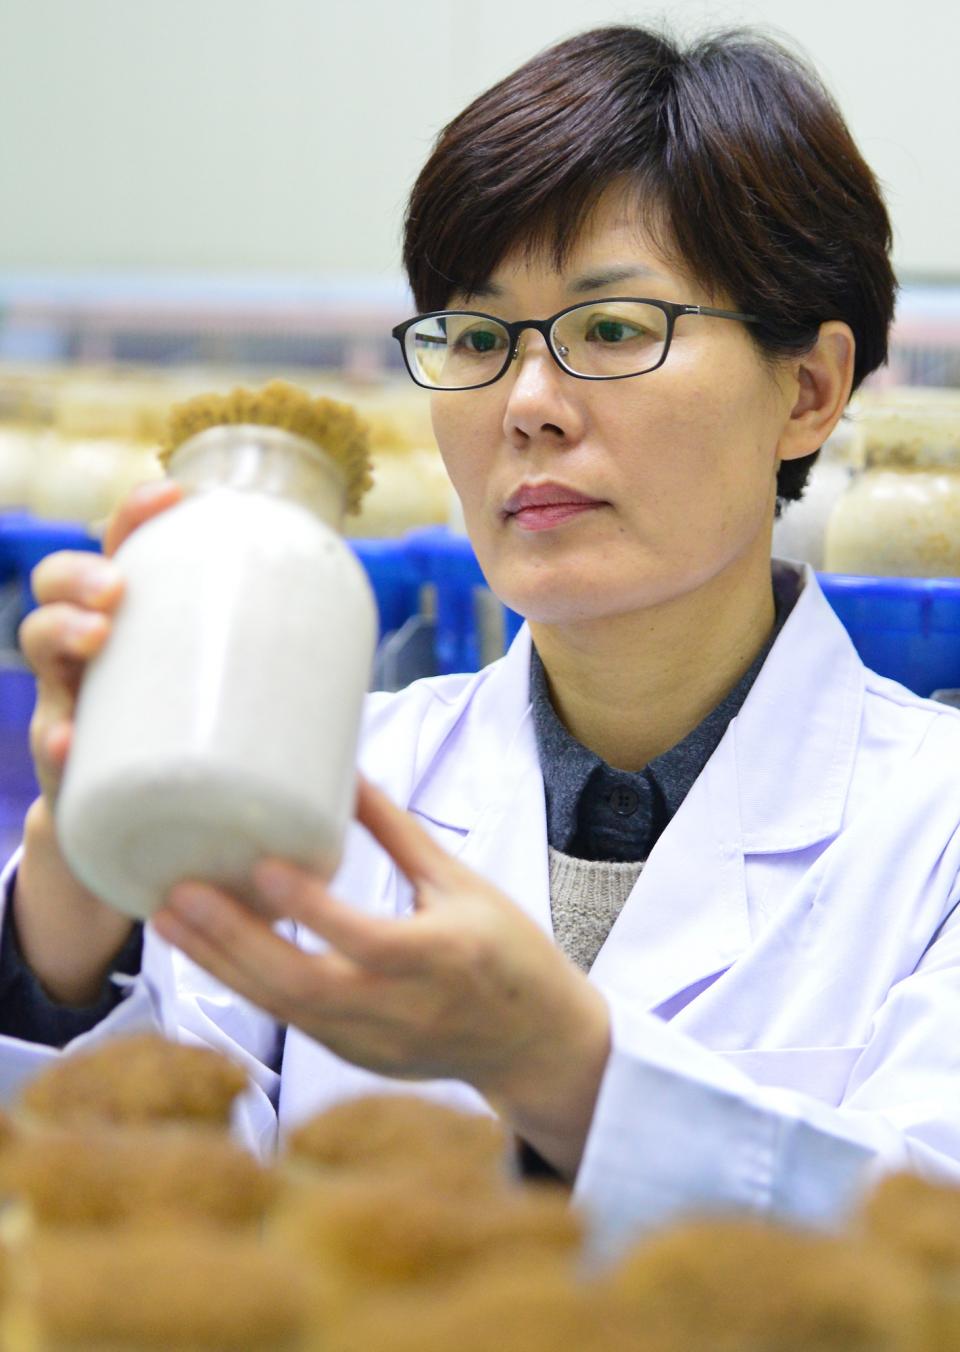 충북농업기술원 김민자 박사가 20일 ‘지방행정의 달인’ 인증패를 받았다. 김 박사가 버섯 신품종 개발을 위해 연구에 몰두하고 있다.